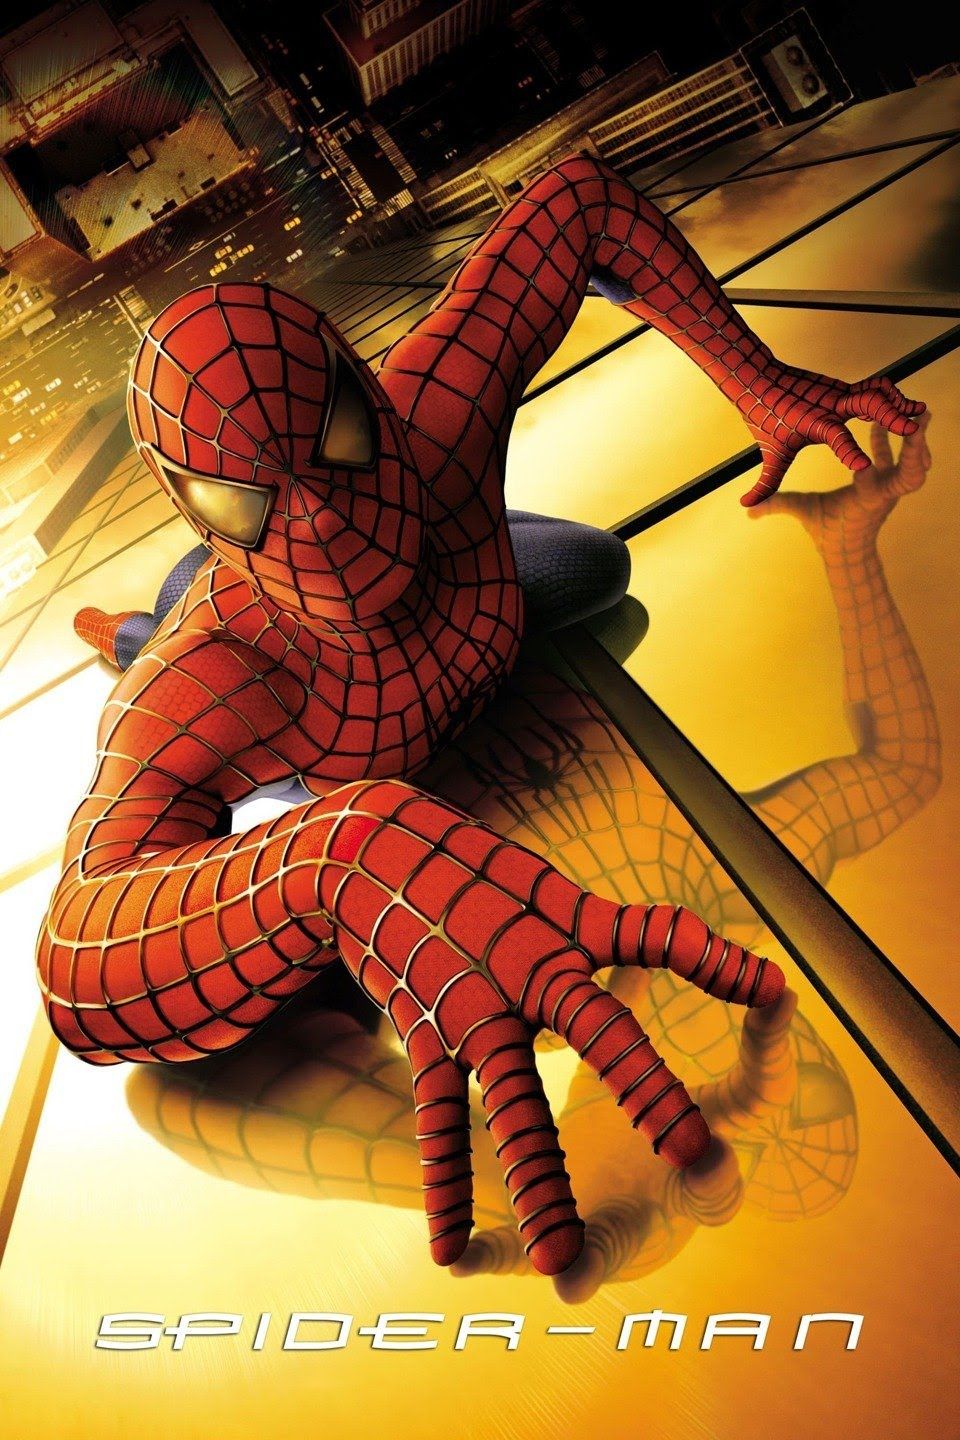 Sam Raimi's Spider-Man 2002 till 2007